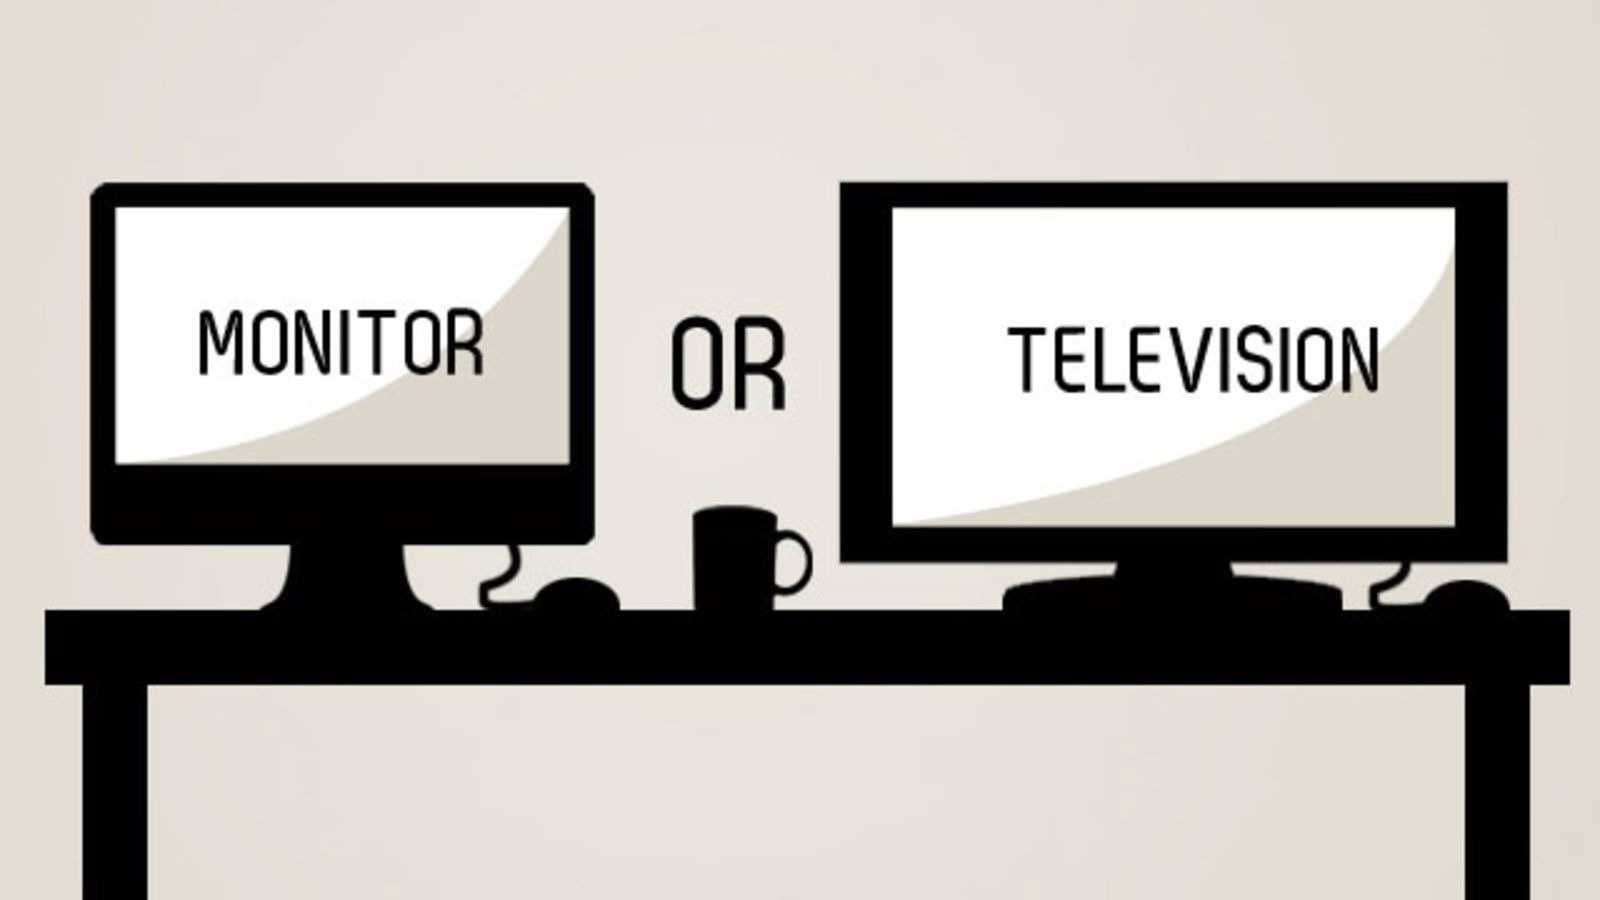 Какой жк телевизор купить и чем они отличаются: характеристики жк телевизоров (матрица, подсветка, разрешение, функции и технологии)